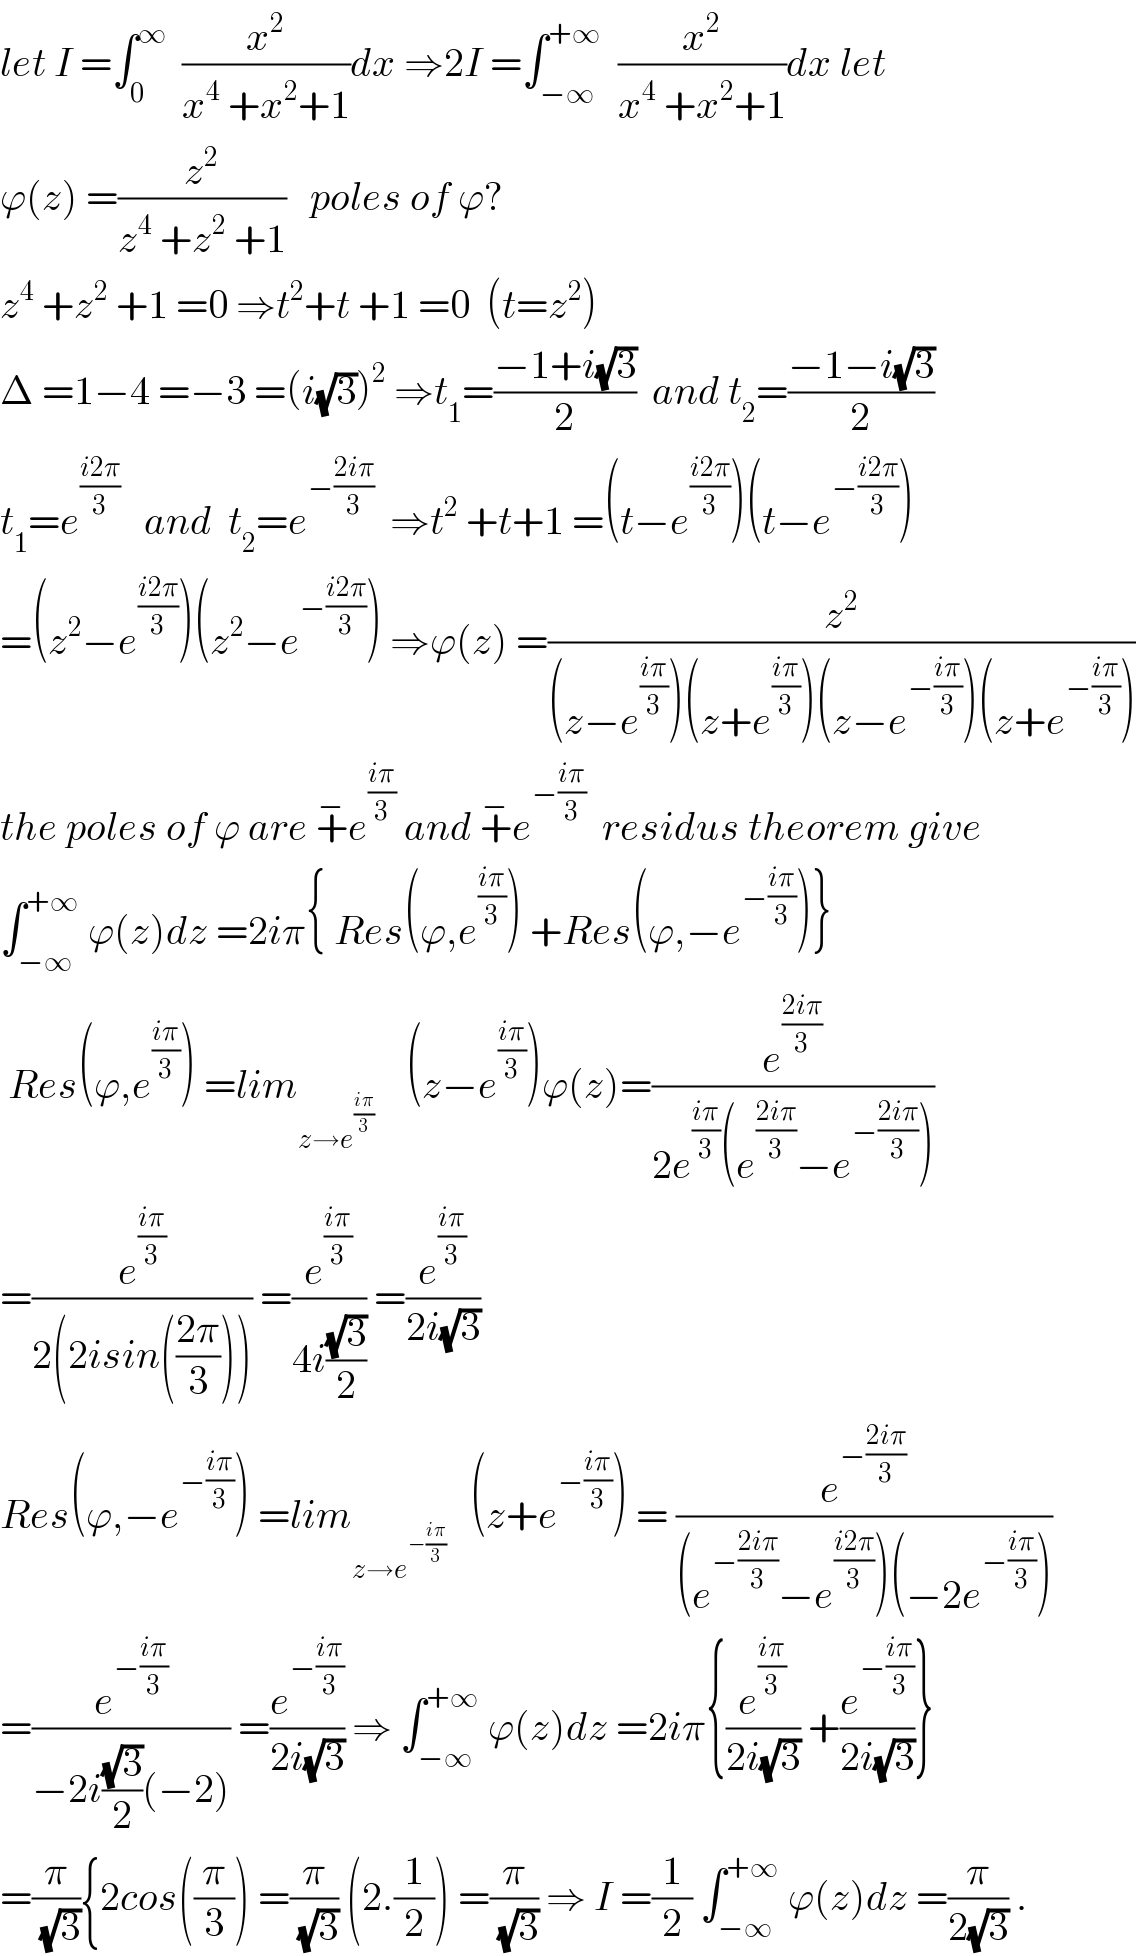 let I =∫_0 ^∞   (x^2 /(x^4  +x^2 +1))dx ⇒2I =∫_(−∞) ^(+∞)   (x^2 /(x^4  +x^2 +1))dx let  ϕ(z) =(z^2 /(z^4  +z^2  +1))   poles of ϕ?  z^4  +z^2  +1 =0 ⇒t^2 +t +1 =0  (t=z^2 )  Δ =1−4 =−3 =(i(√3))^2  ⇒t_1 =((−1+i(√3))/2)  and t_2 =((−1−i(√3))/2)  t_1 =e^((i2π)/3)    and  t_2 =e^(−((2iπ)/3))   ⇒t^2  +t+1 =(t−e^((i2π)/3) )(t−e^(−((i2π)/3)) )  =(z^2 −e^((i2π)/3) )(z^2 −e^(−((i2π)/3)) ) ⇒ϕ(z) =(z^2 /((z−e^((iπ)/3) )(z+e^((iπ)/3) )(z−e^(−((iπ)/3)) )(z+e^(−((iπ)/3)) )))  the poles of ϕ are +^− e^((iπ)/3)  and +^− e^(−((iπ)/3))   residus theorem give  ∫_(−∞) ^(+∞)  ϕ(z)dz =2iπ{ Res(ϕ,e^((iπ)/3) ) +Res(ϕ,−e^(−((iπ)/3)) )}   Res(ϕ,e^((iπ)/3) ) =lim_(z→e^((iπ)/3) )     (z−e^((iπ)/3) )ϕ(z)=(e^((2iπ)/3) /(2e^((iπ)/3) (e^((2iπ)/3) −e^(−((2iπ)/3)) )))  =(e^((iπ)/3) /(2(2isin(((2π)/3))))) =(e^((iπ)/3) /(4i((√3)/2))) =(e^((iπ)/3) /(2i(√3)))  Res(ϕ,−e^(−((iπ)/3)) ) =lim_(z→e^(−((iπ)/3)) )    (z+e^(−((iπ)/3)) ) = (e^(−((2iπ)/3)) /((e^(−((2iπ)/3)) −e^((i2π)/3) )(−2e^(−((iπ)/3)) )))  =(e^(−((iπ)/3)) /(−2i((√3)/2)(−2))) =(e^(−((iπ)/3)) /(2i(√3))) ⇒ ∫_(−∞) ^(+∞)  ϕ(z)dz =2iπ{(e^((iπ)/3) /(2i(√3))) +(e^(−((iπ)/3)) /(2i(√3)))}  =(π/(√3)){2cos((π/3)) =(π/(√3)) (2.(1/2)) =(π/(√3)) ⇒ I =(1/2) ∫_(−∞) ^(+∞)  ϕ(z)dz =(π/(2(√3))) .  